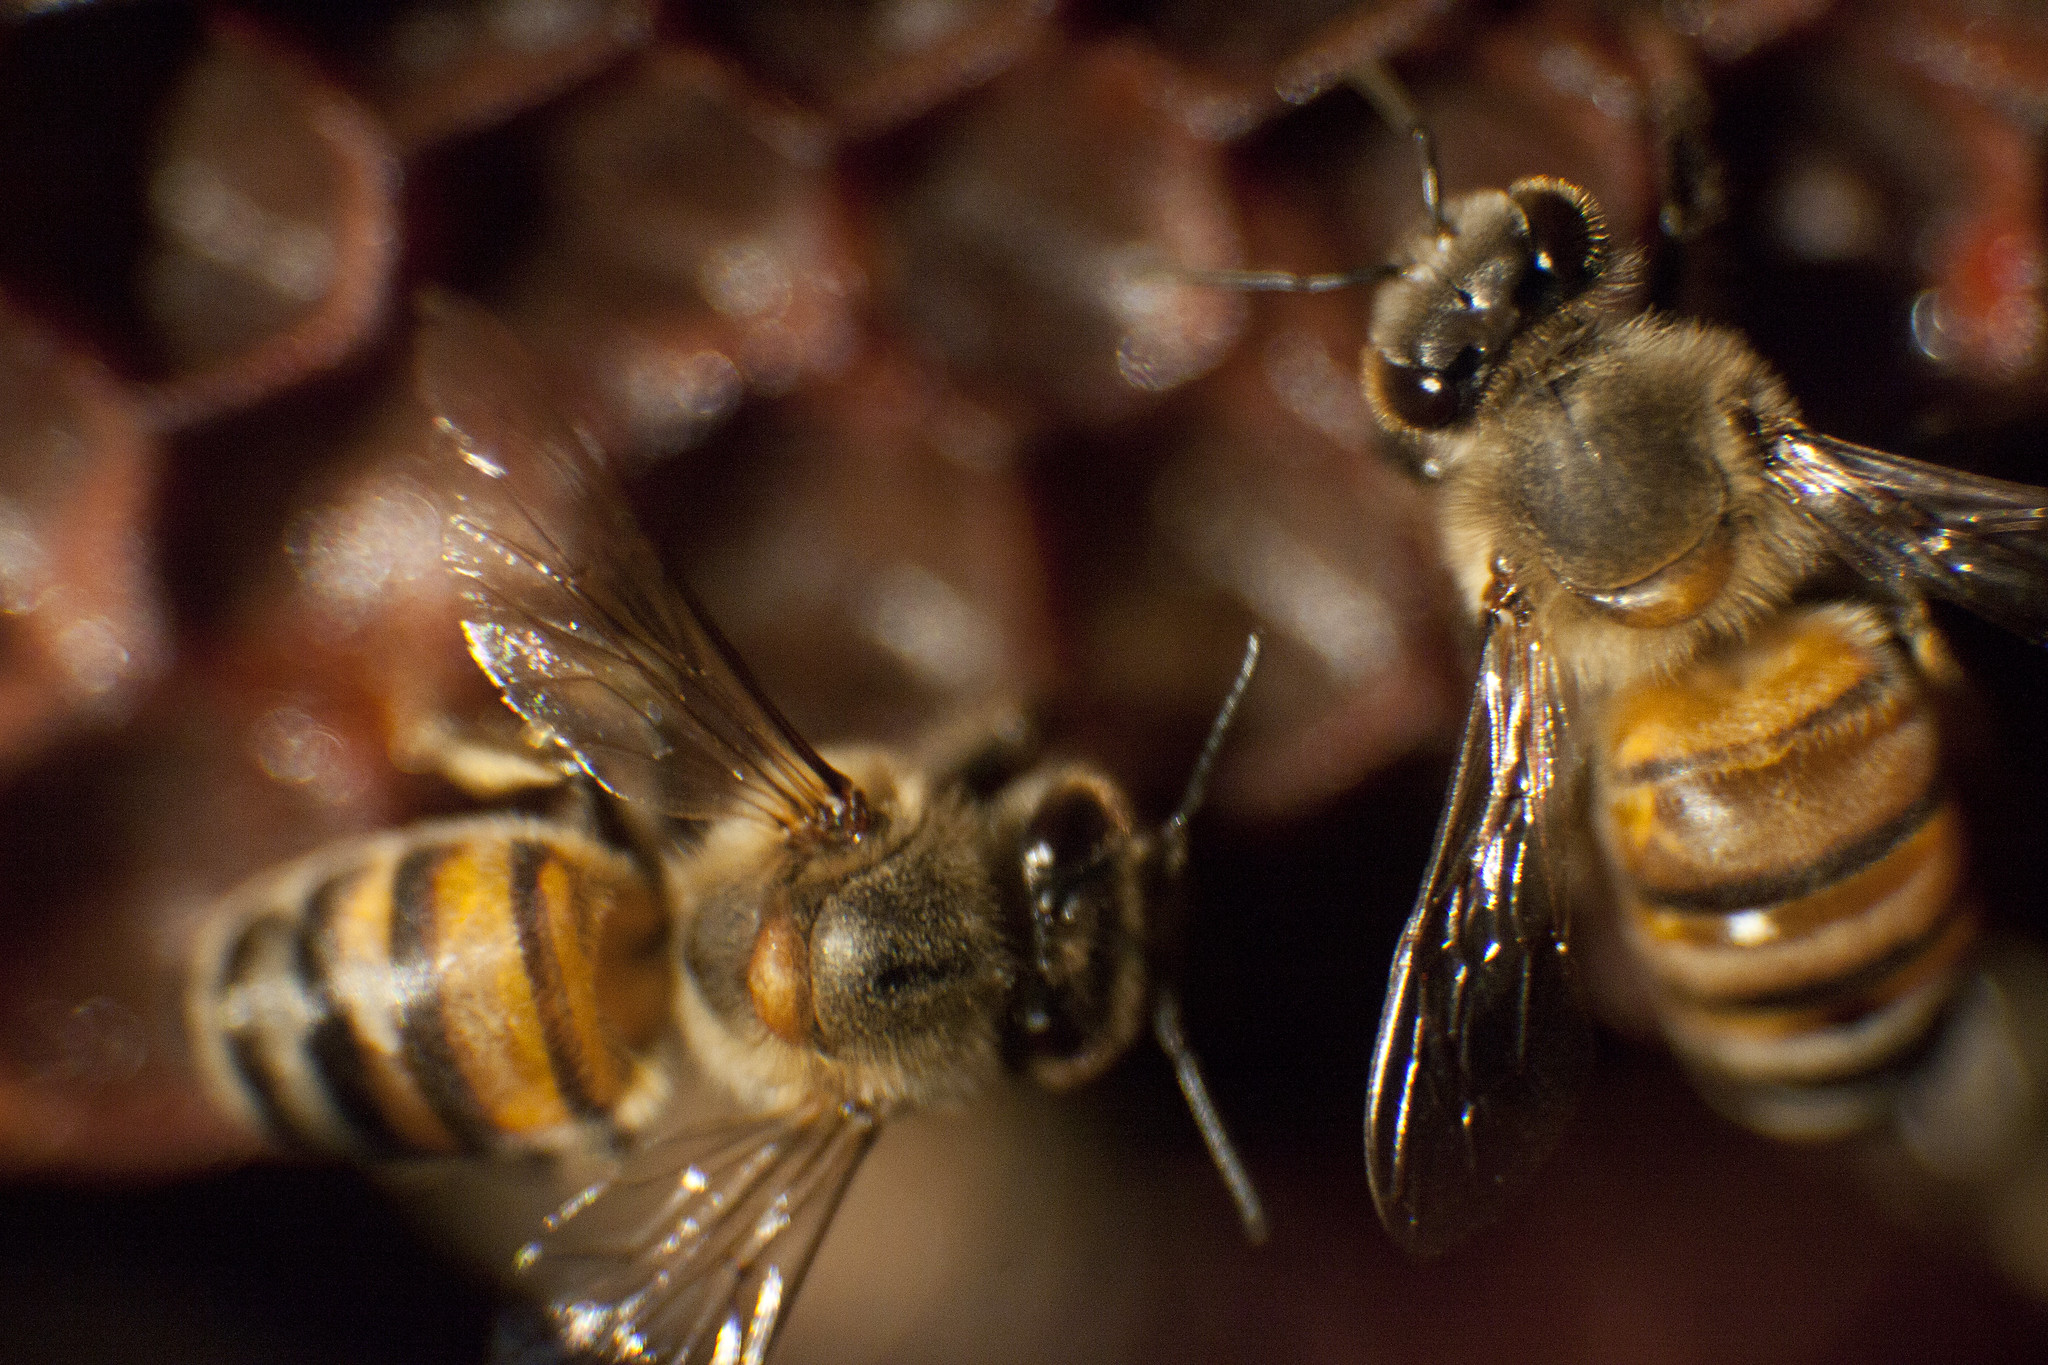 Citricultura e apicultura: com boas práticas é possível coexistência entre as duas atividades